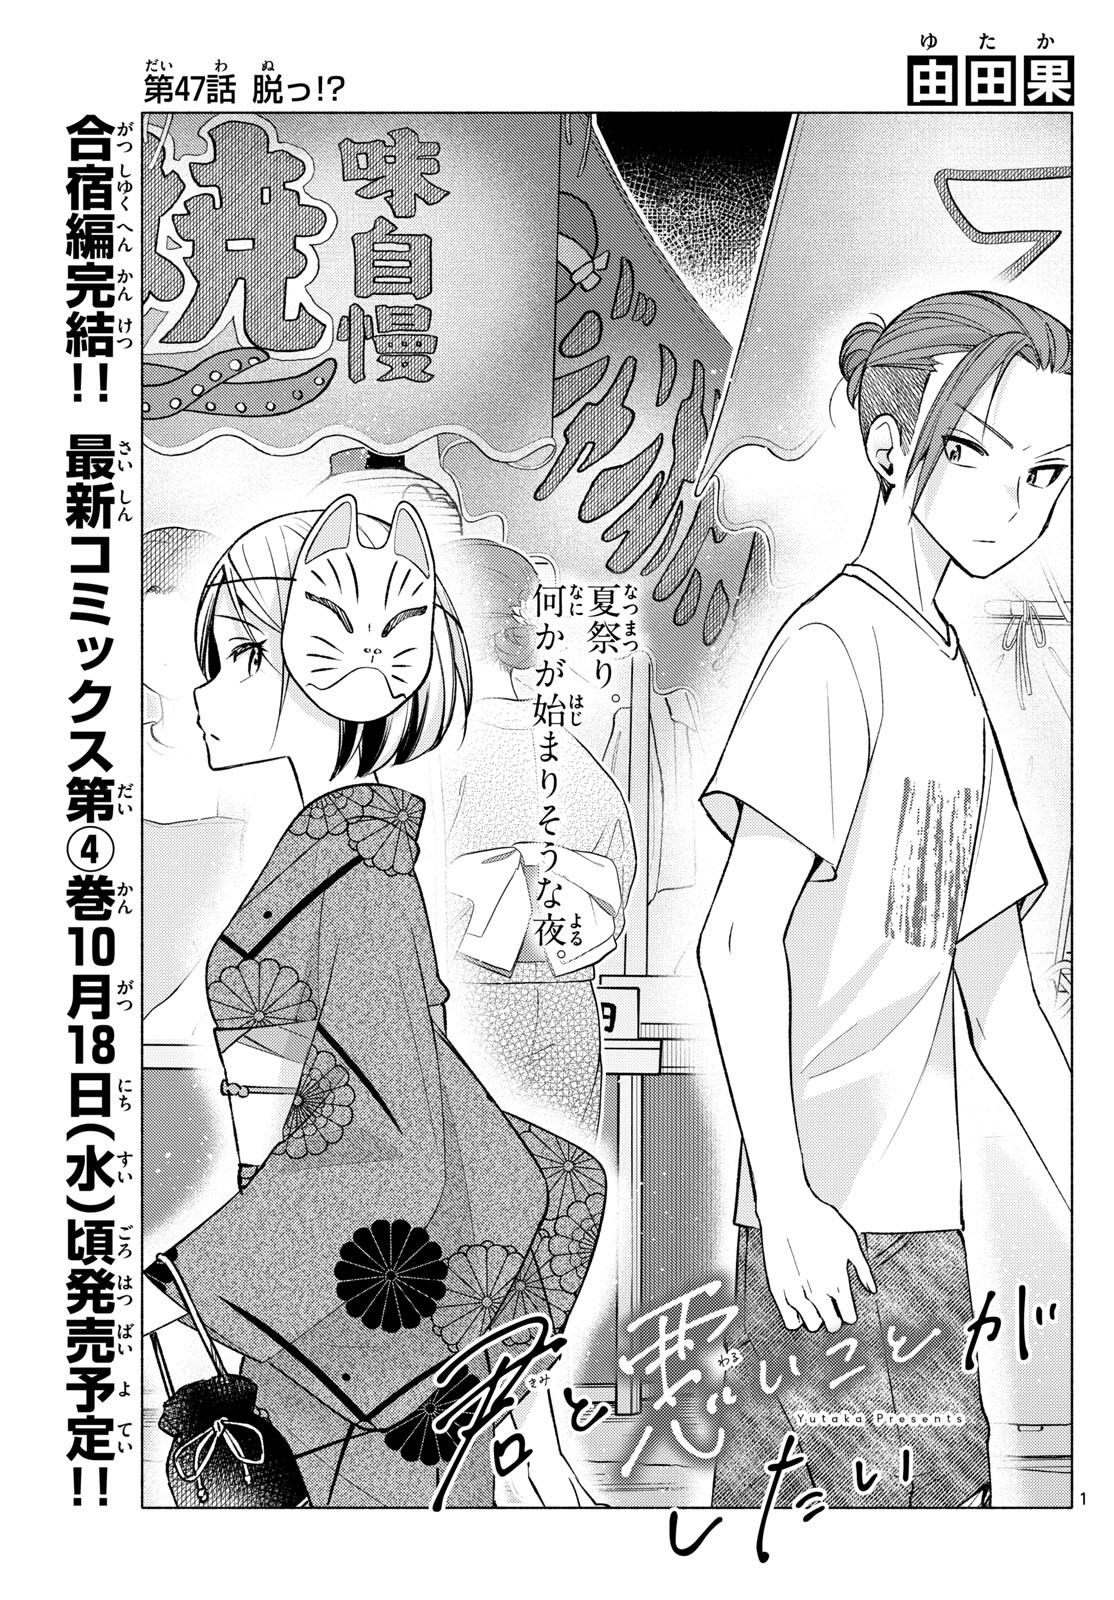 Kimi to Warui Koto ga Shitai - Chapter 047 - Page 1